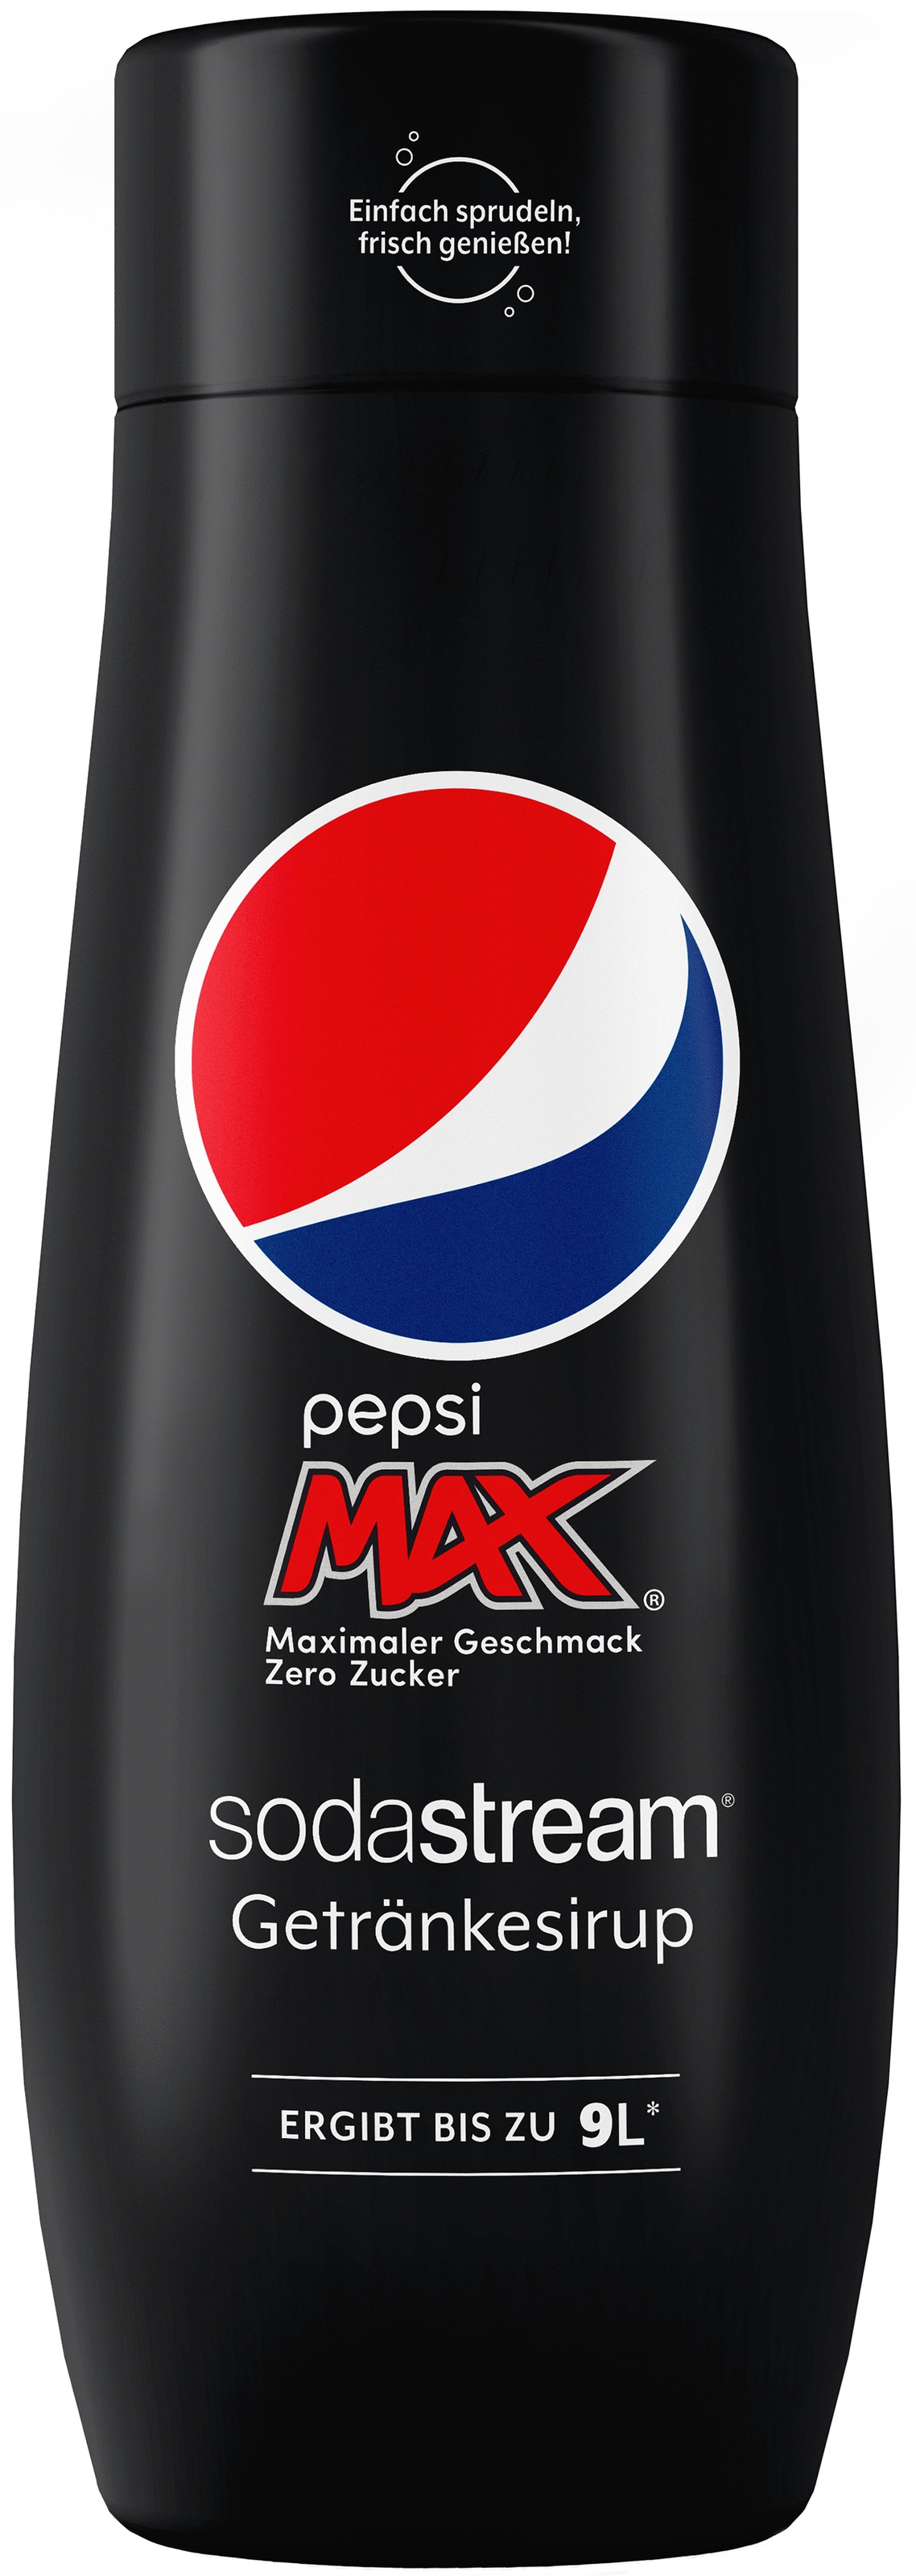 SodaStream Getränke-Sirup, (3 Flaschen), PepsiMax,7UP Free+SchwipSchwap Zero,440ml für je 9L Fertiggetränk